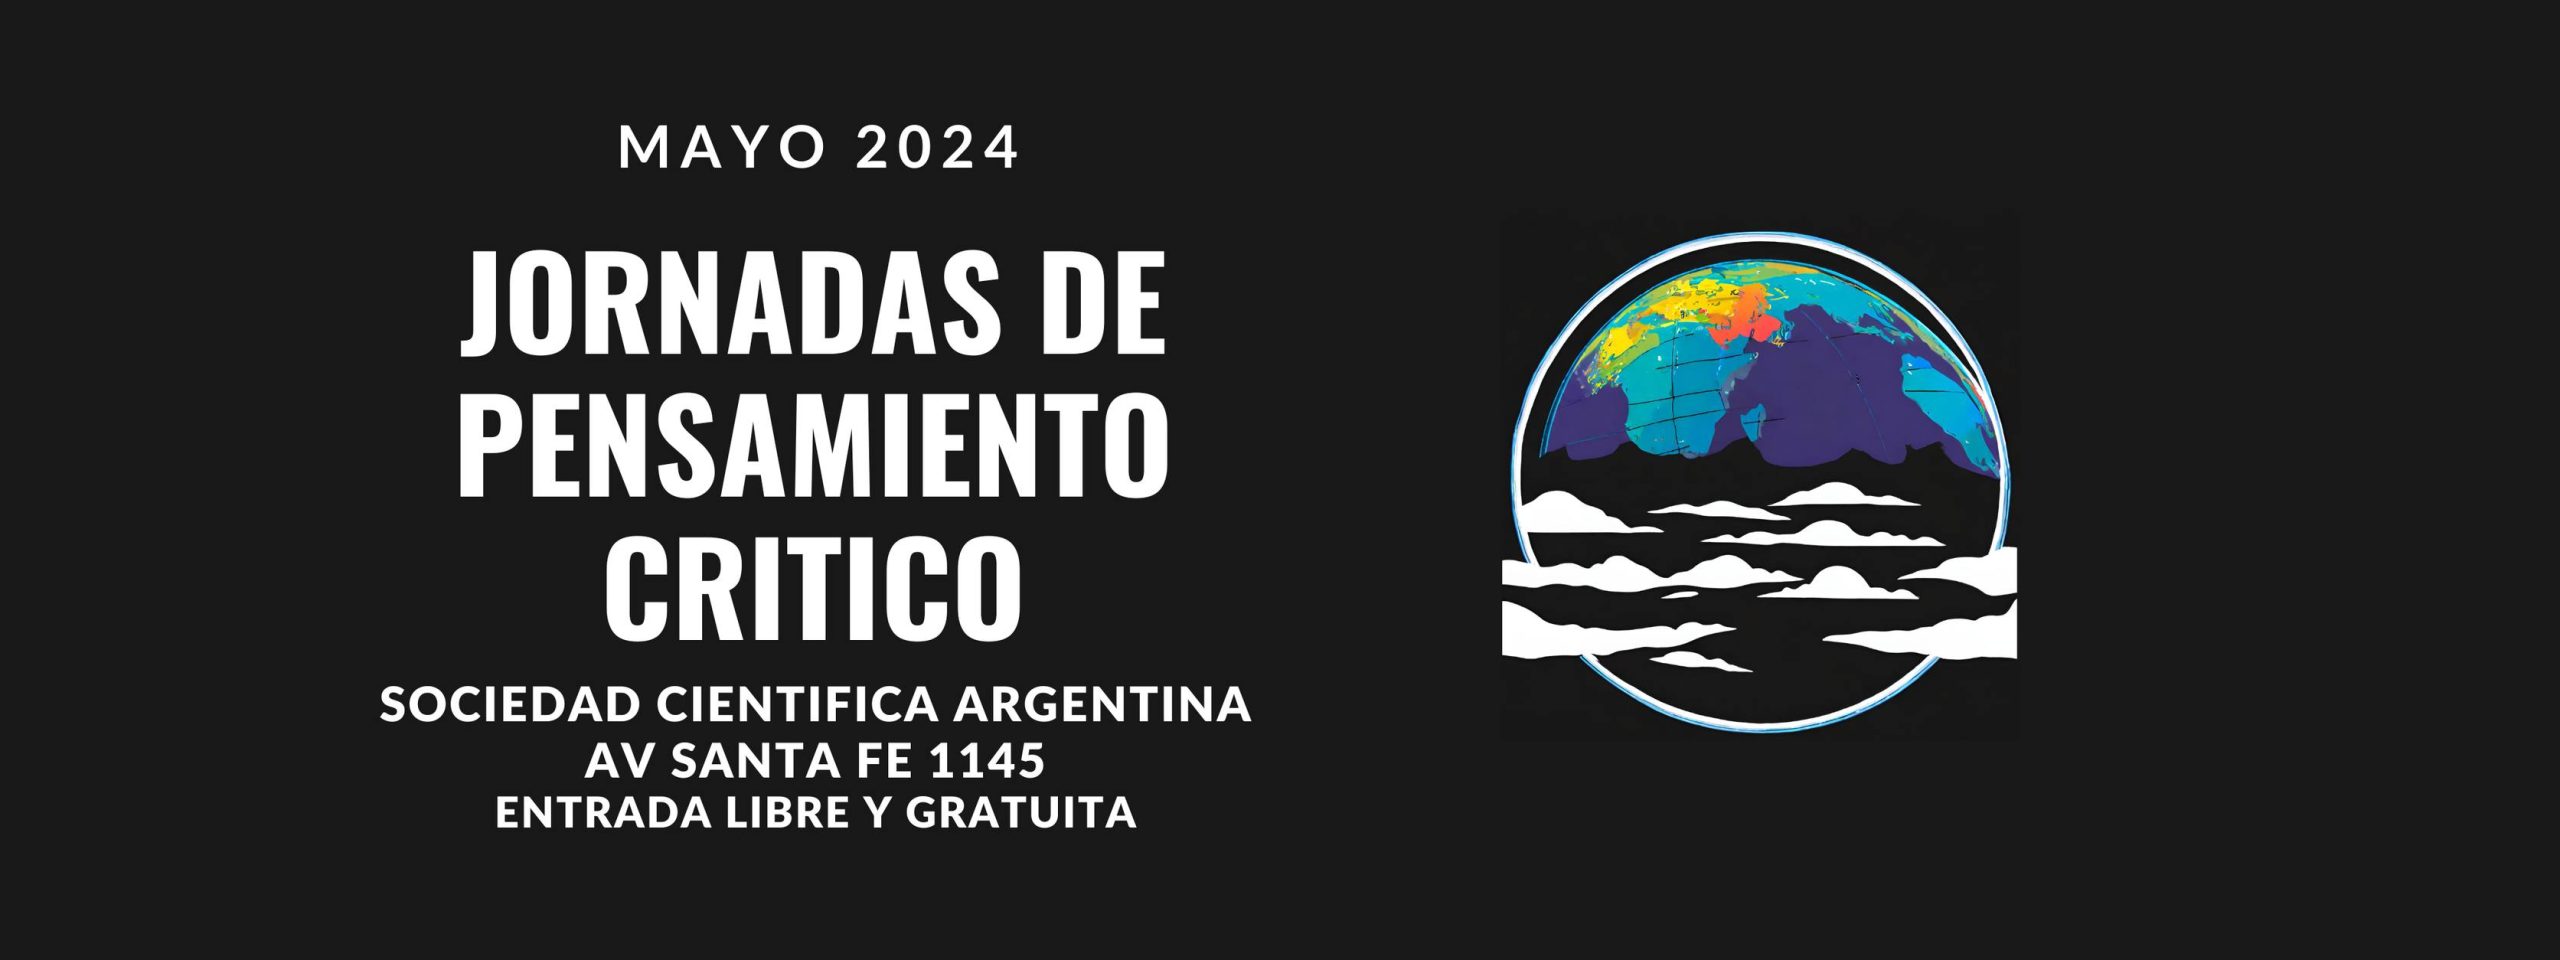 Mayo 2024 Jornadas De Pensamiento Critico - Sociedad Cientifica Argentina Av Santa Fe 1145 Entrada Libre Y Gratuita